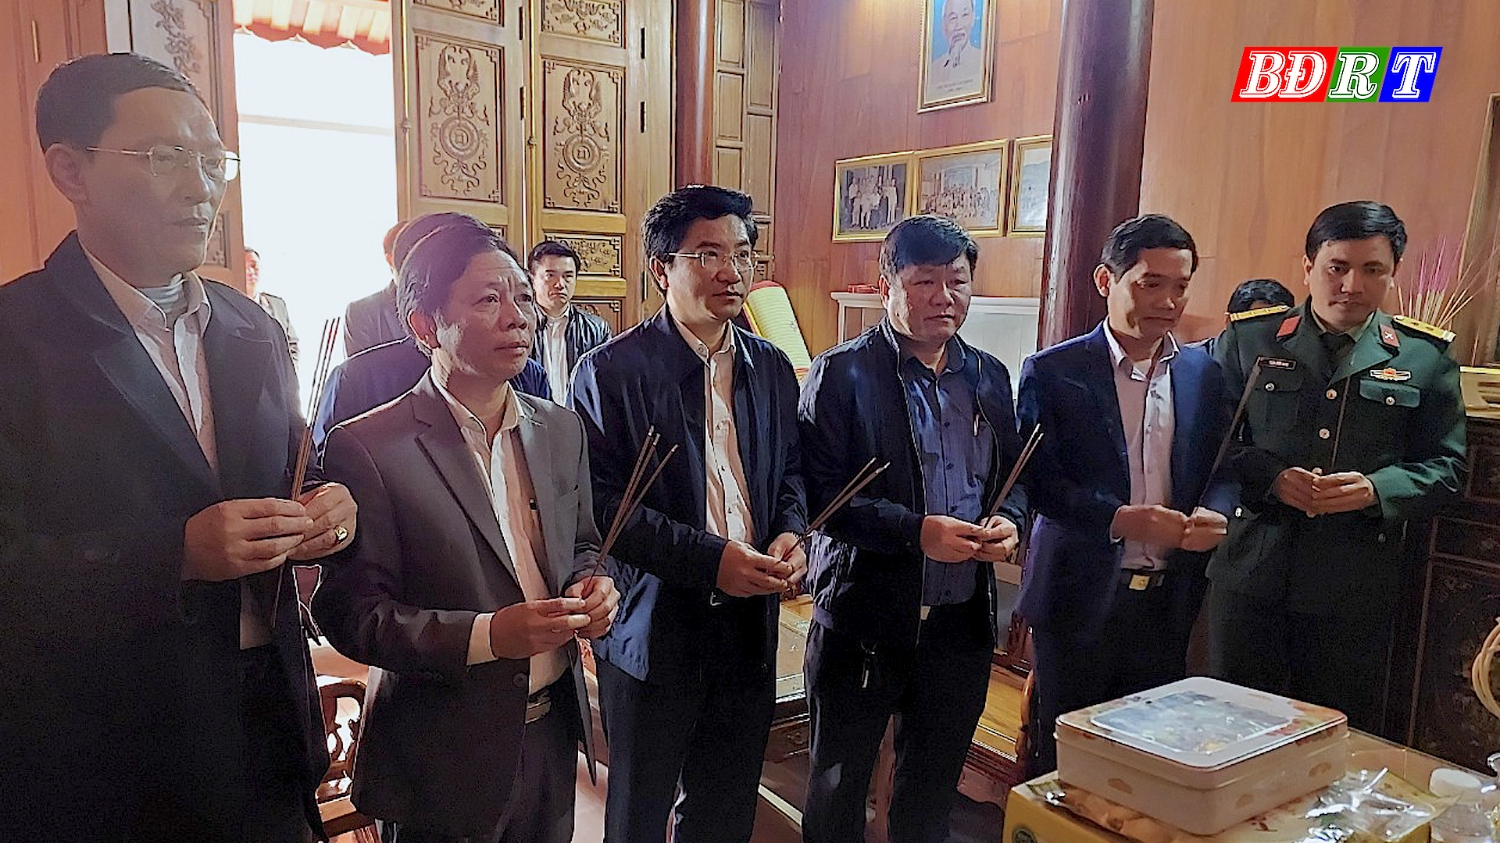 Đồng chí Bí thư Thị ủy Trương An Ninh cùng các đồng chí trong đoàn công tác dâng hương tại nhà lưu niệm của Trung tướng